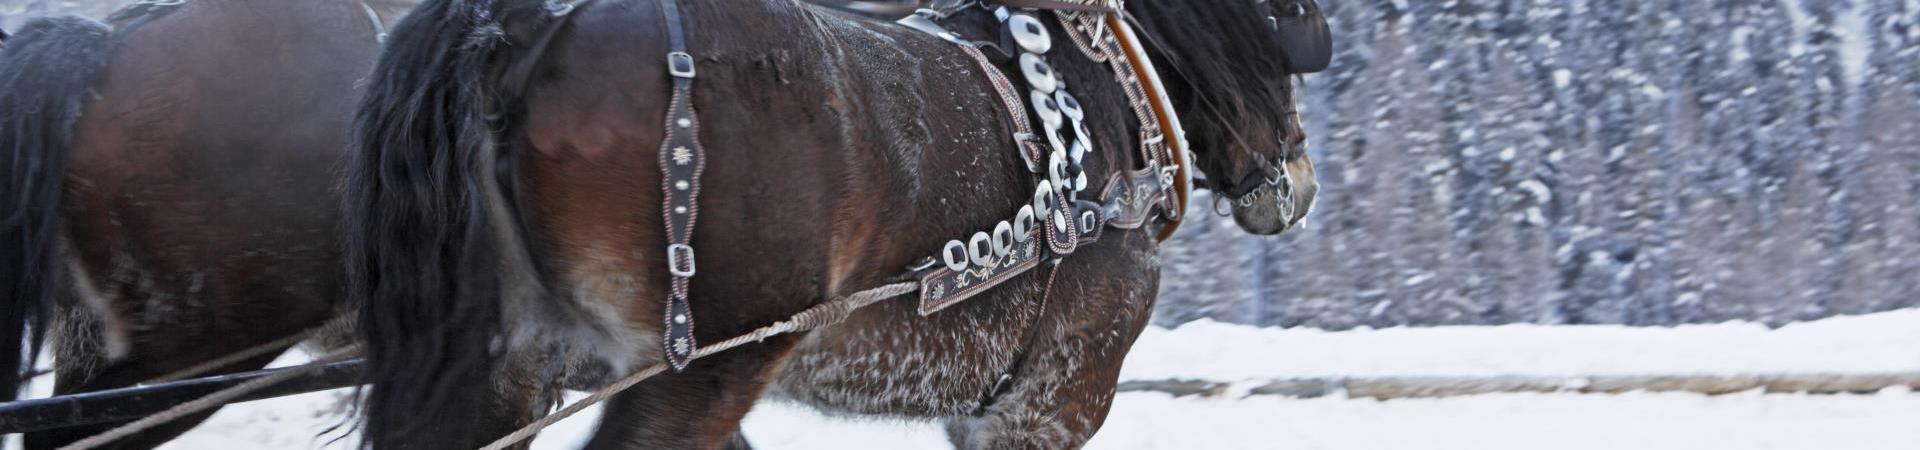 Una slitta trainata da cavalli in inverno